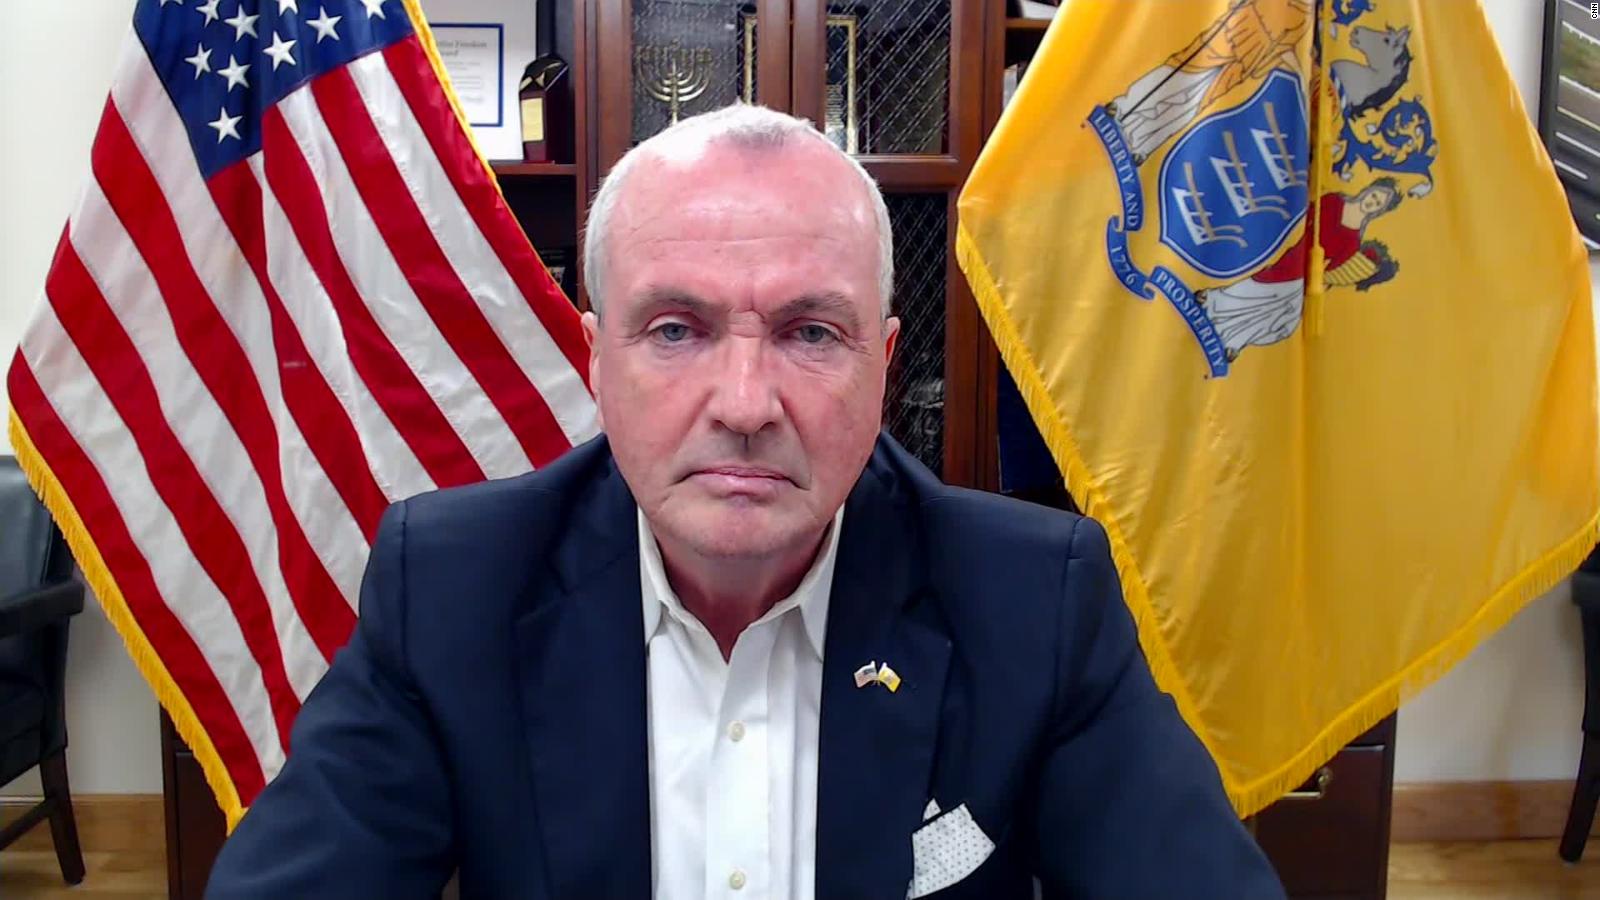 New Jersey Gov. Murphy reacts to Trump downplaying coronavirus